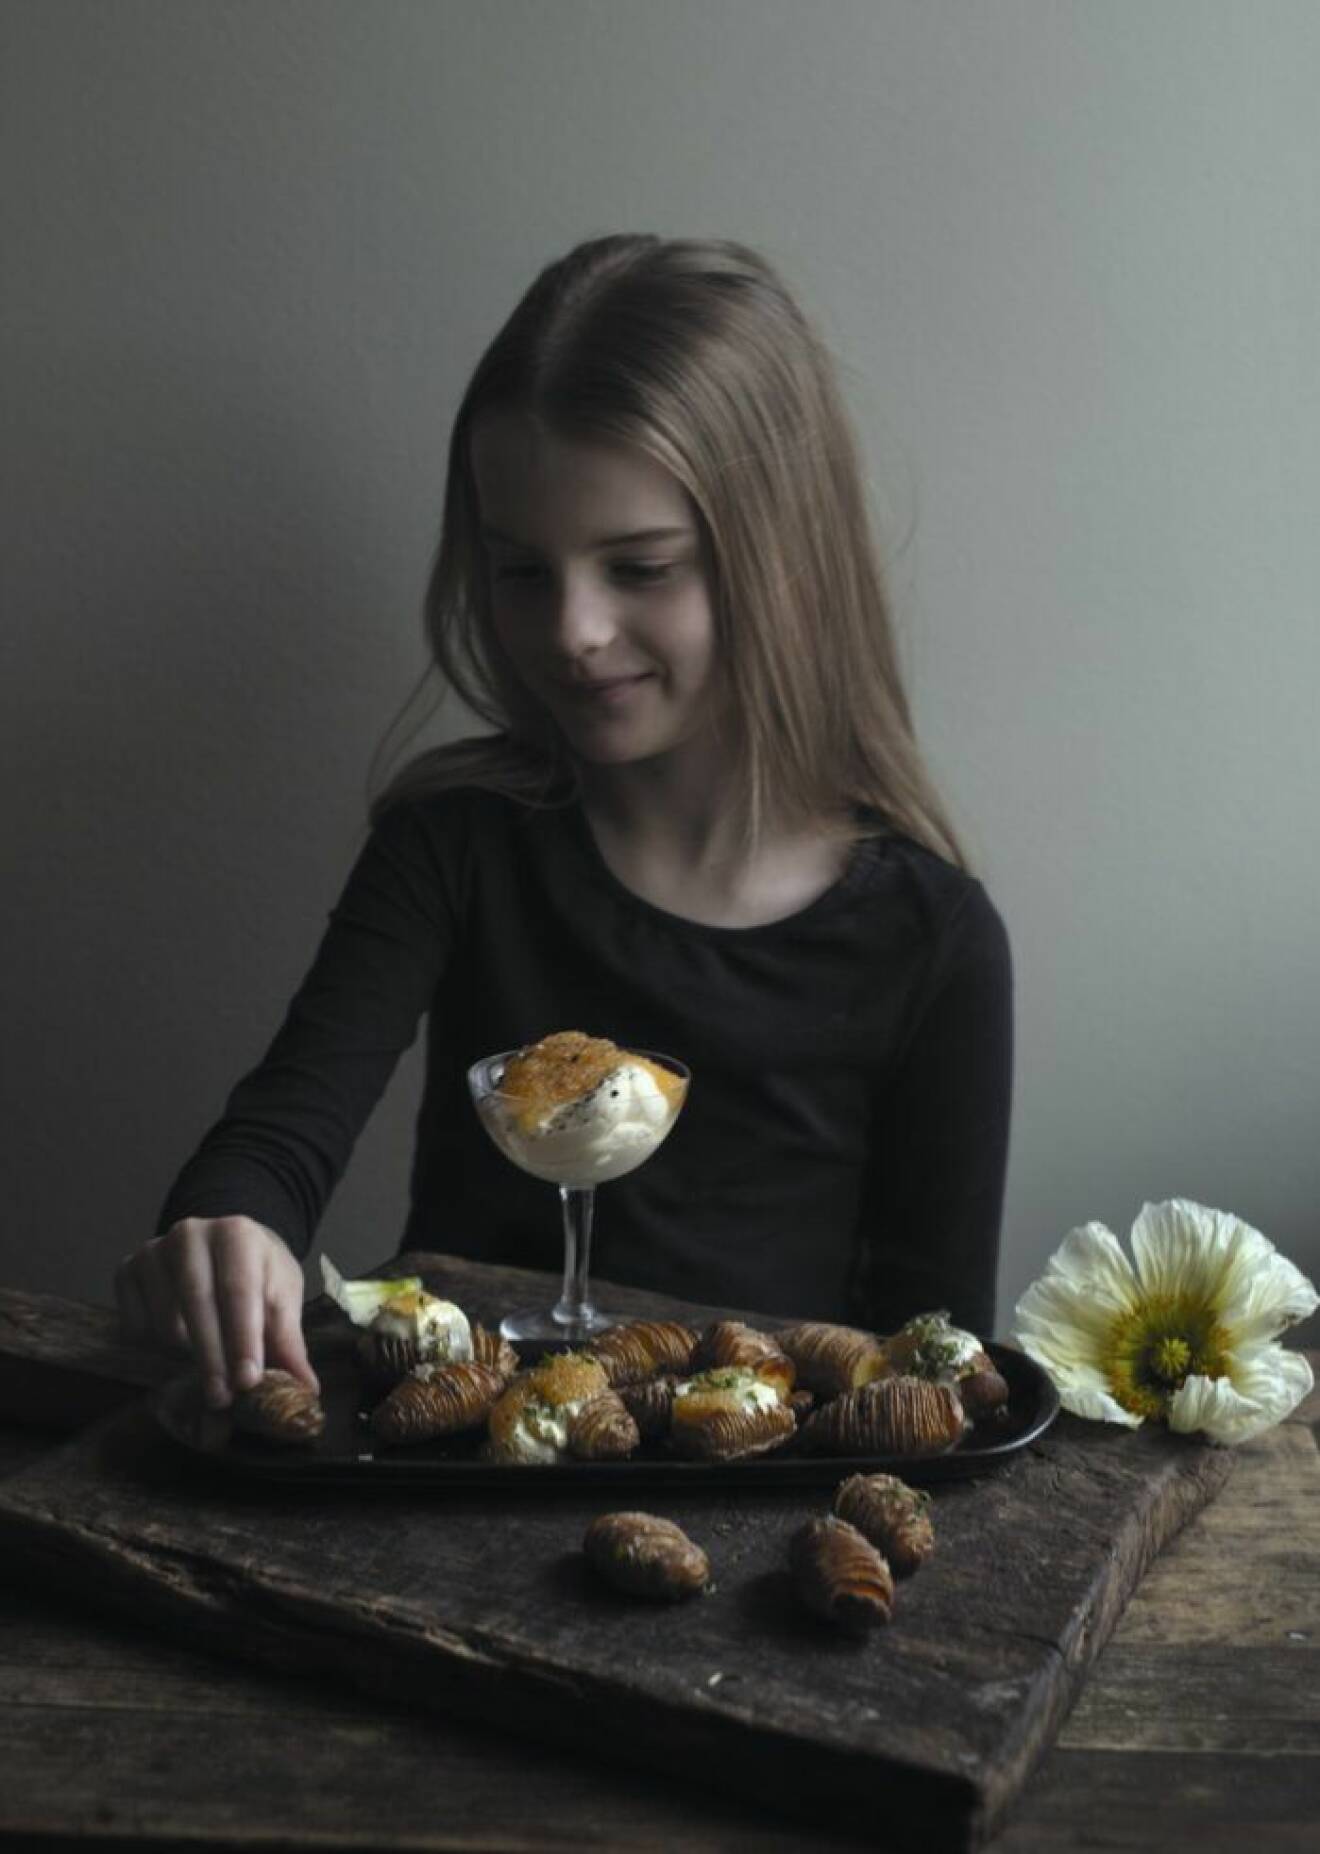 Sofia Woods recept på hasselbackspotatis med smetana och löjrom.